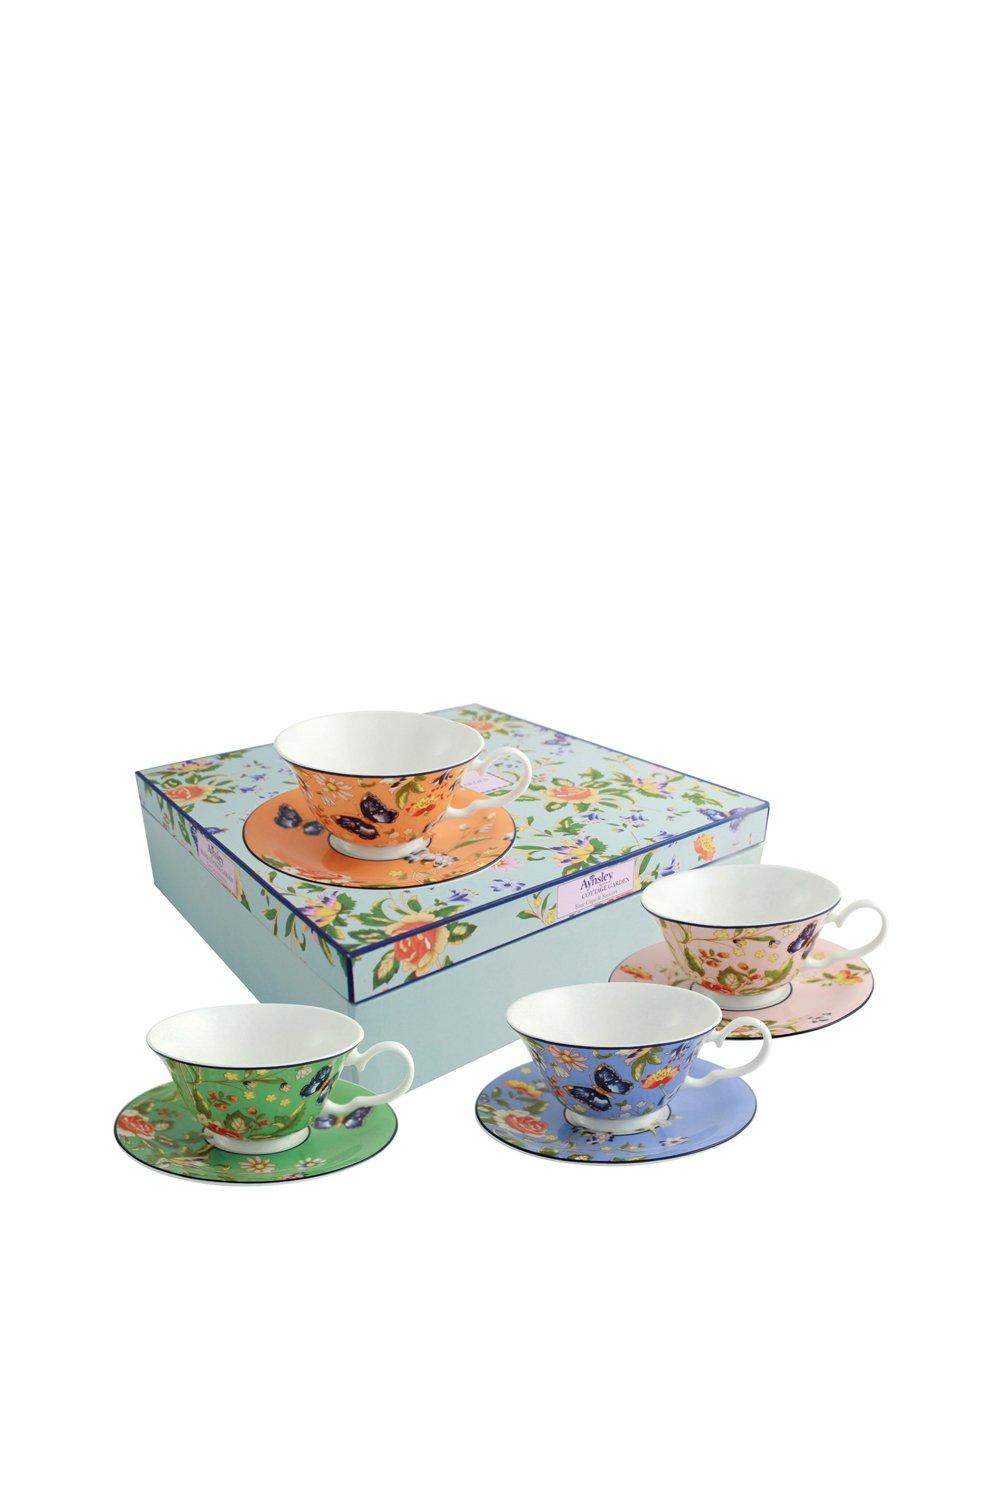 'Cottage Garden' Windsor Teacups & Saucers Set